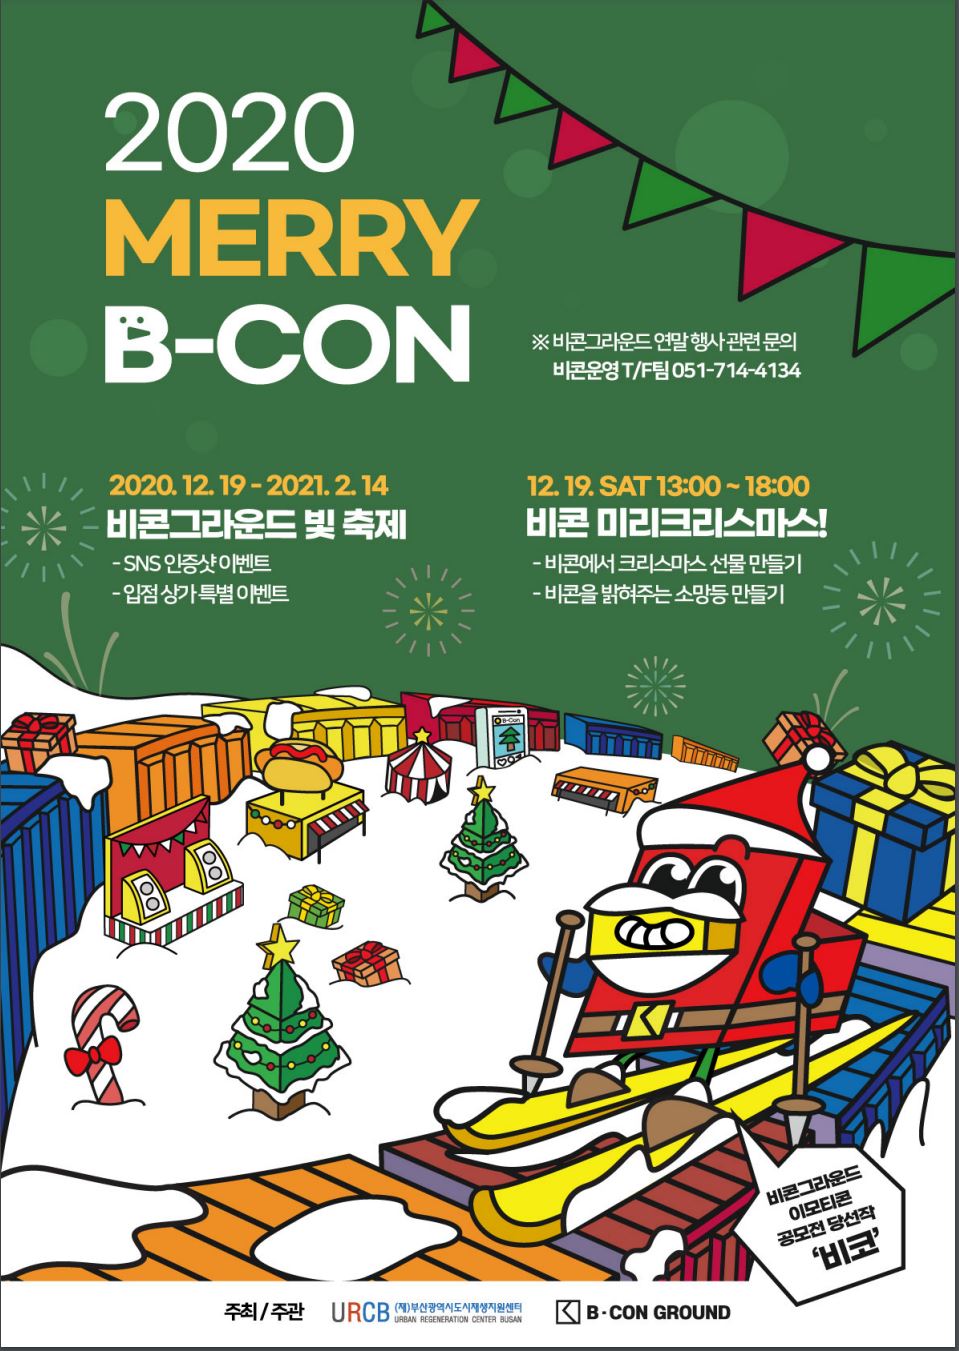 비콘그라운드 연말 행사 2020 MERRY B-CON 개최